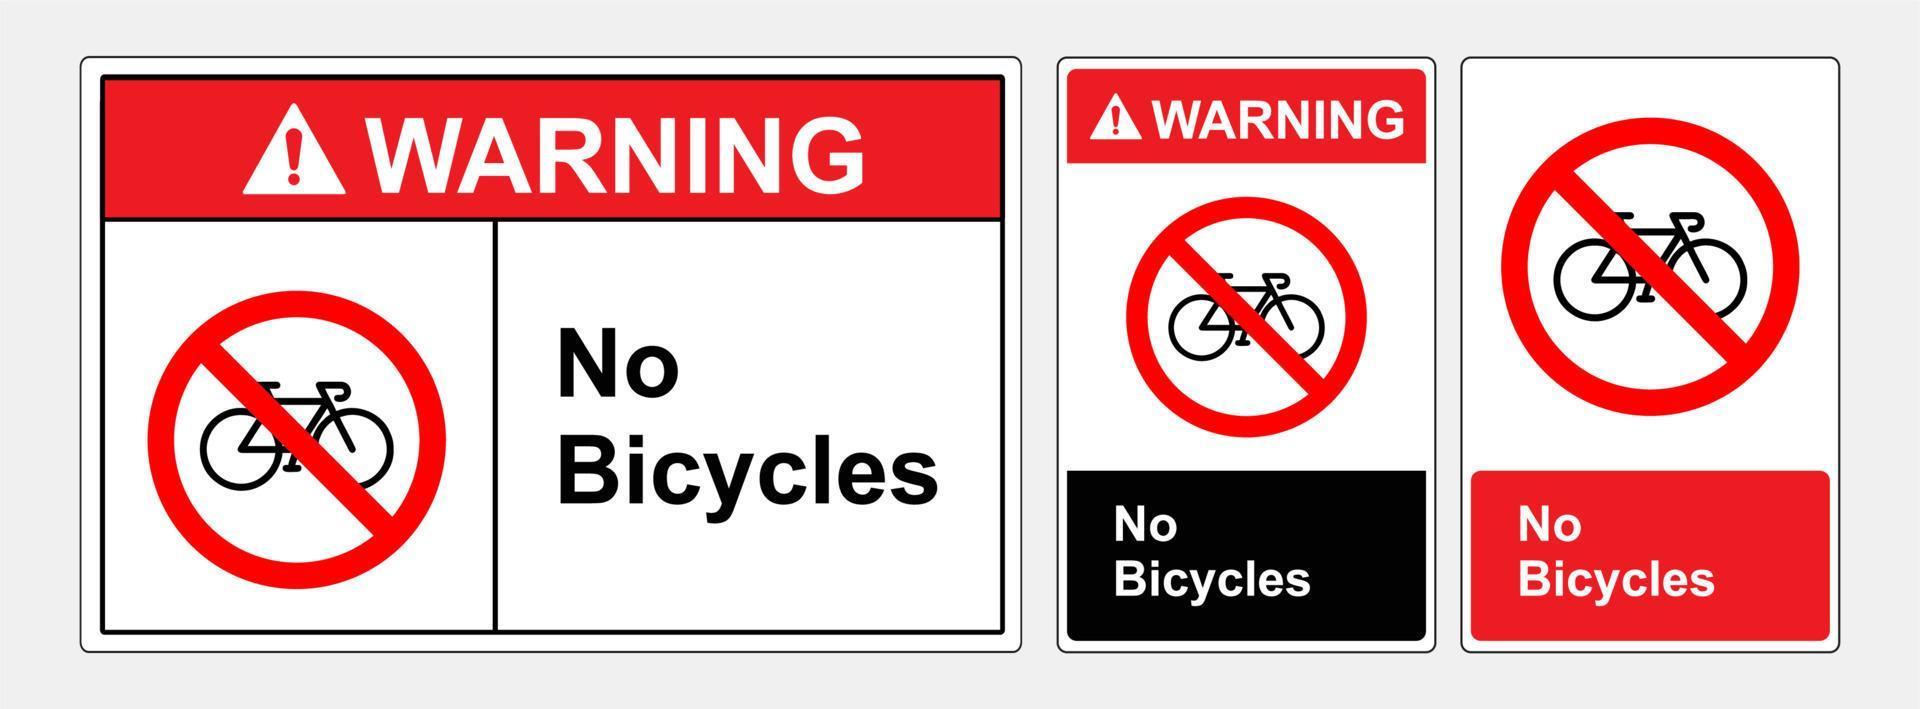 Fahrräder dürfen nicht betreten werden. Symbolzeichen, Vektorillustration. Etikett .eps10 vektor